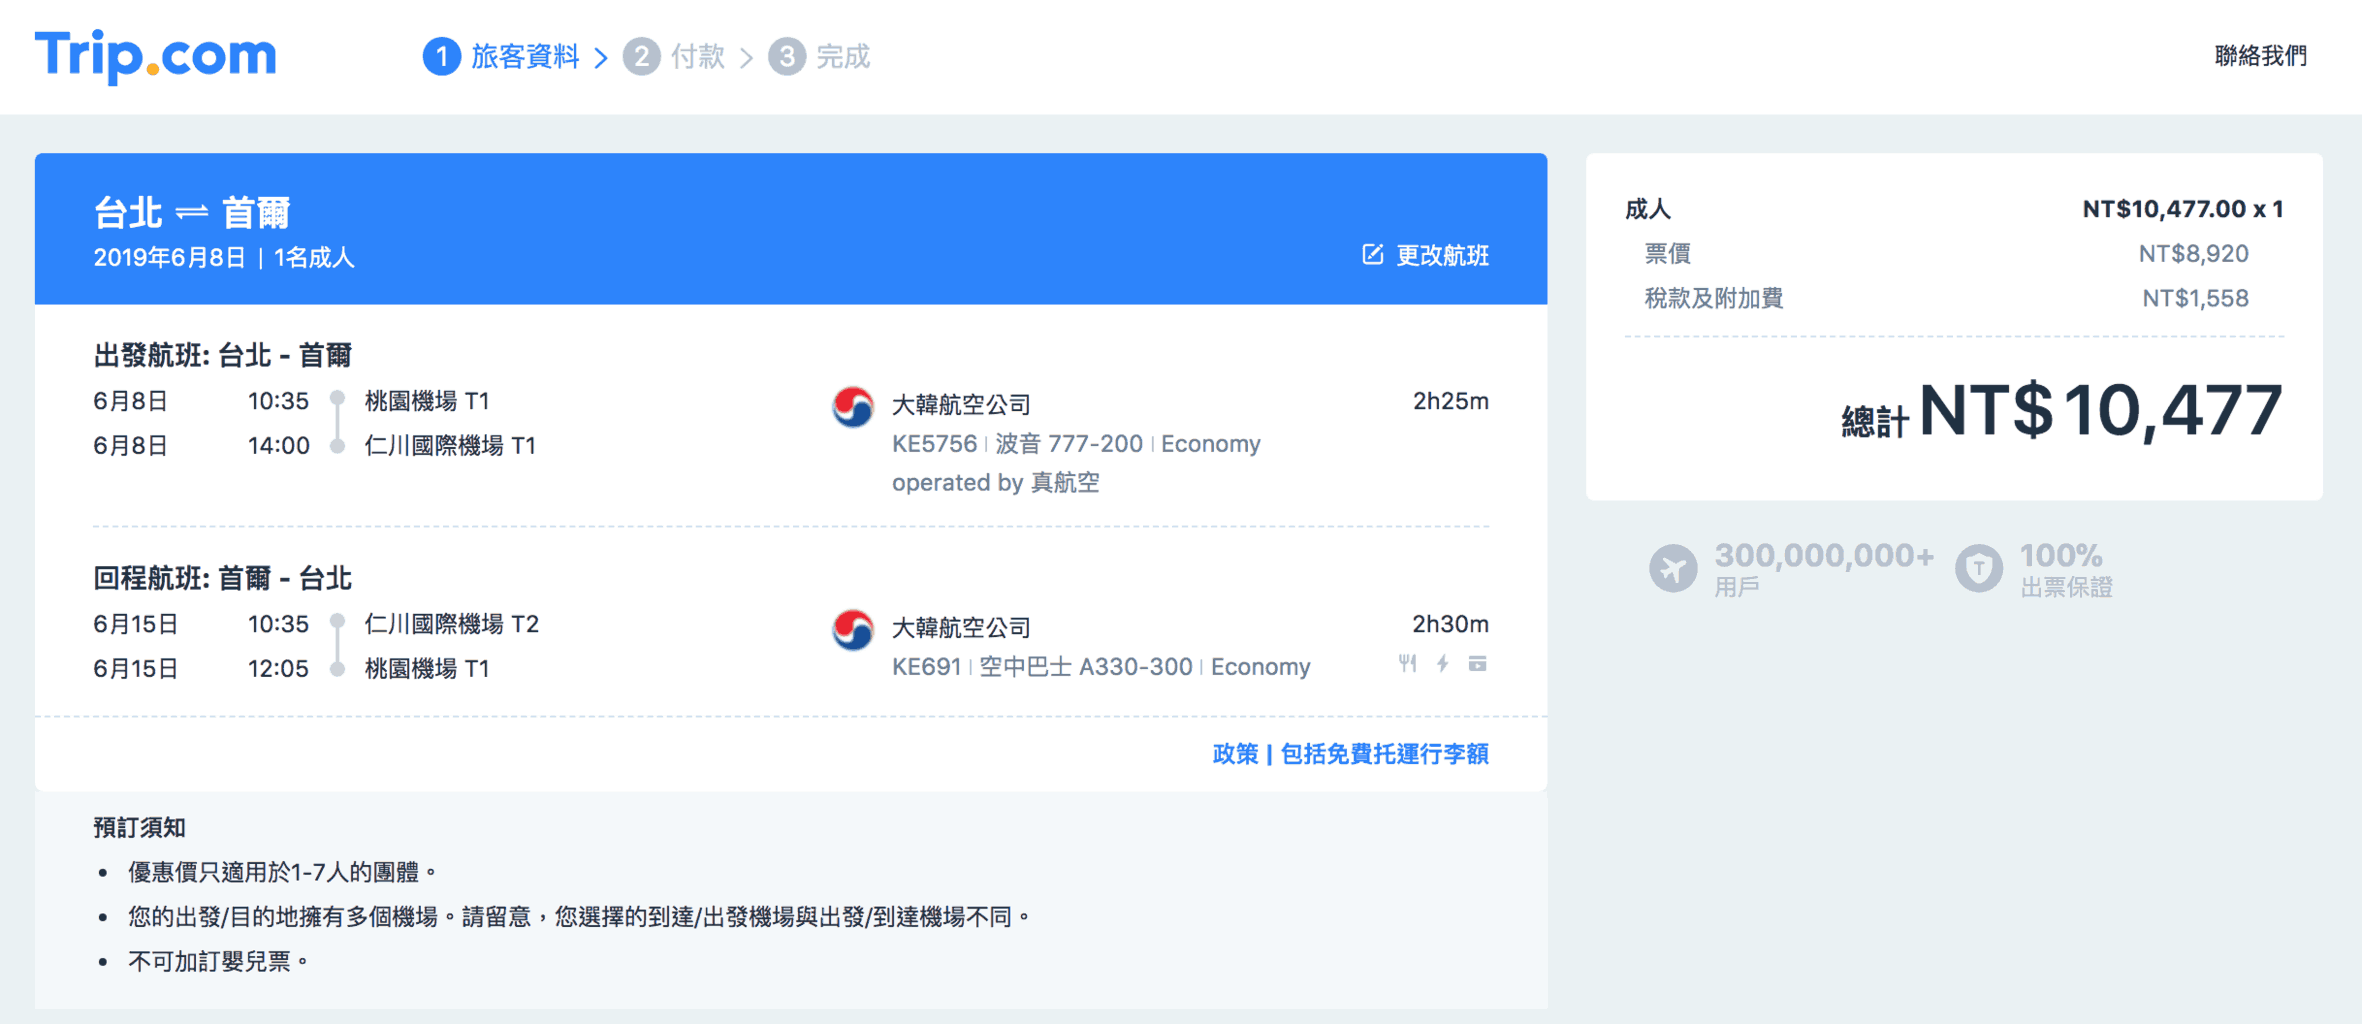  trip.com訂機票 - 價差示範 / 台北往返首爾